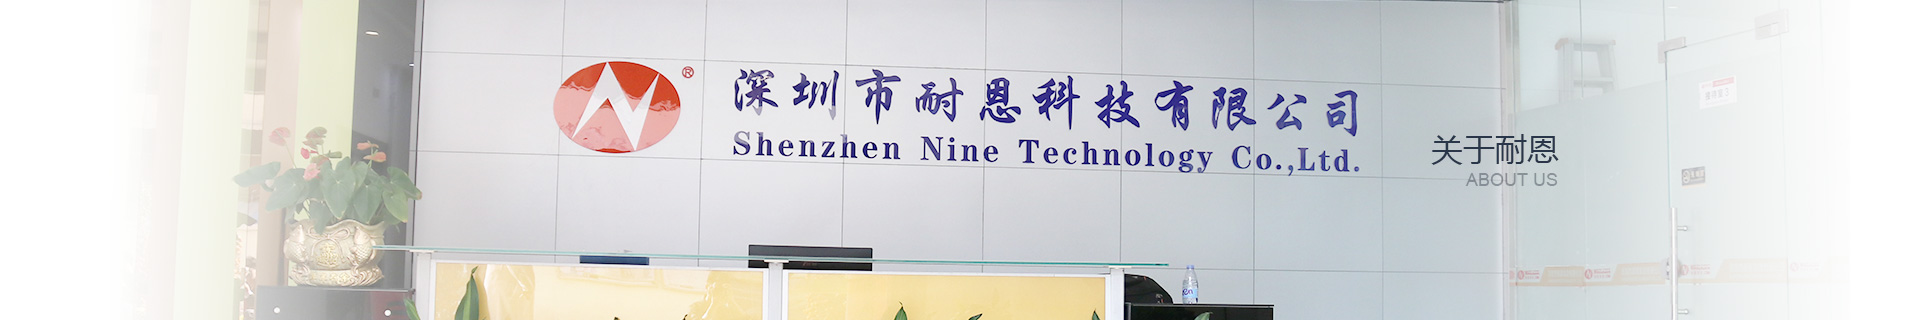 SHENZHEN NINE TECHNOLOGY CO.,LTD